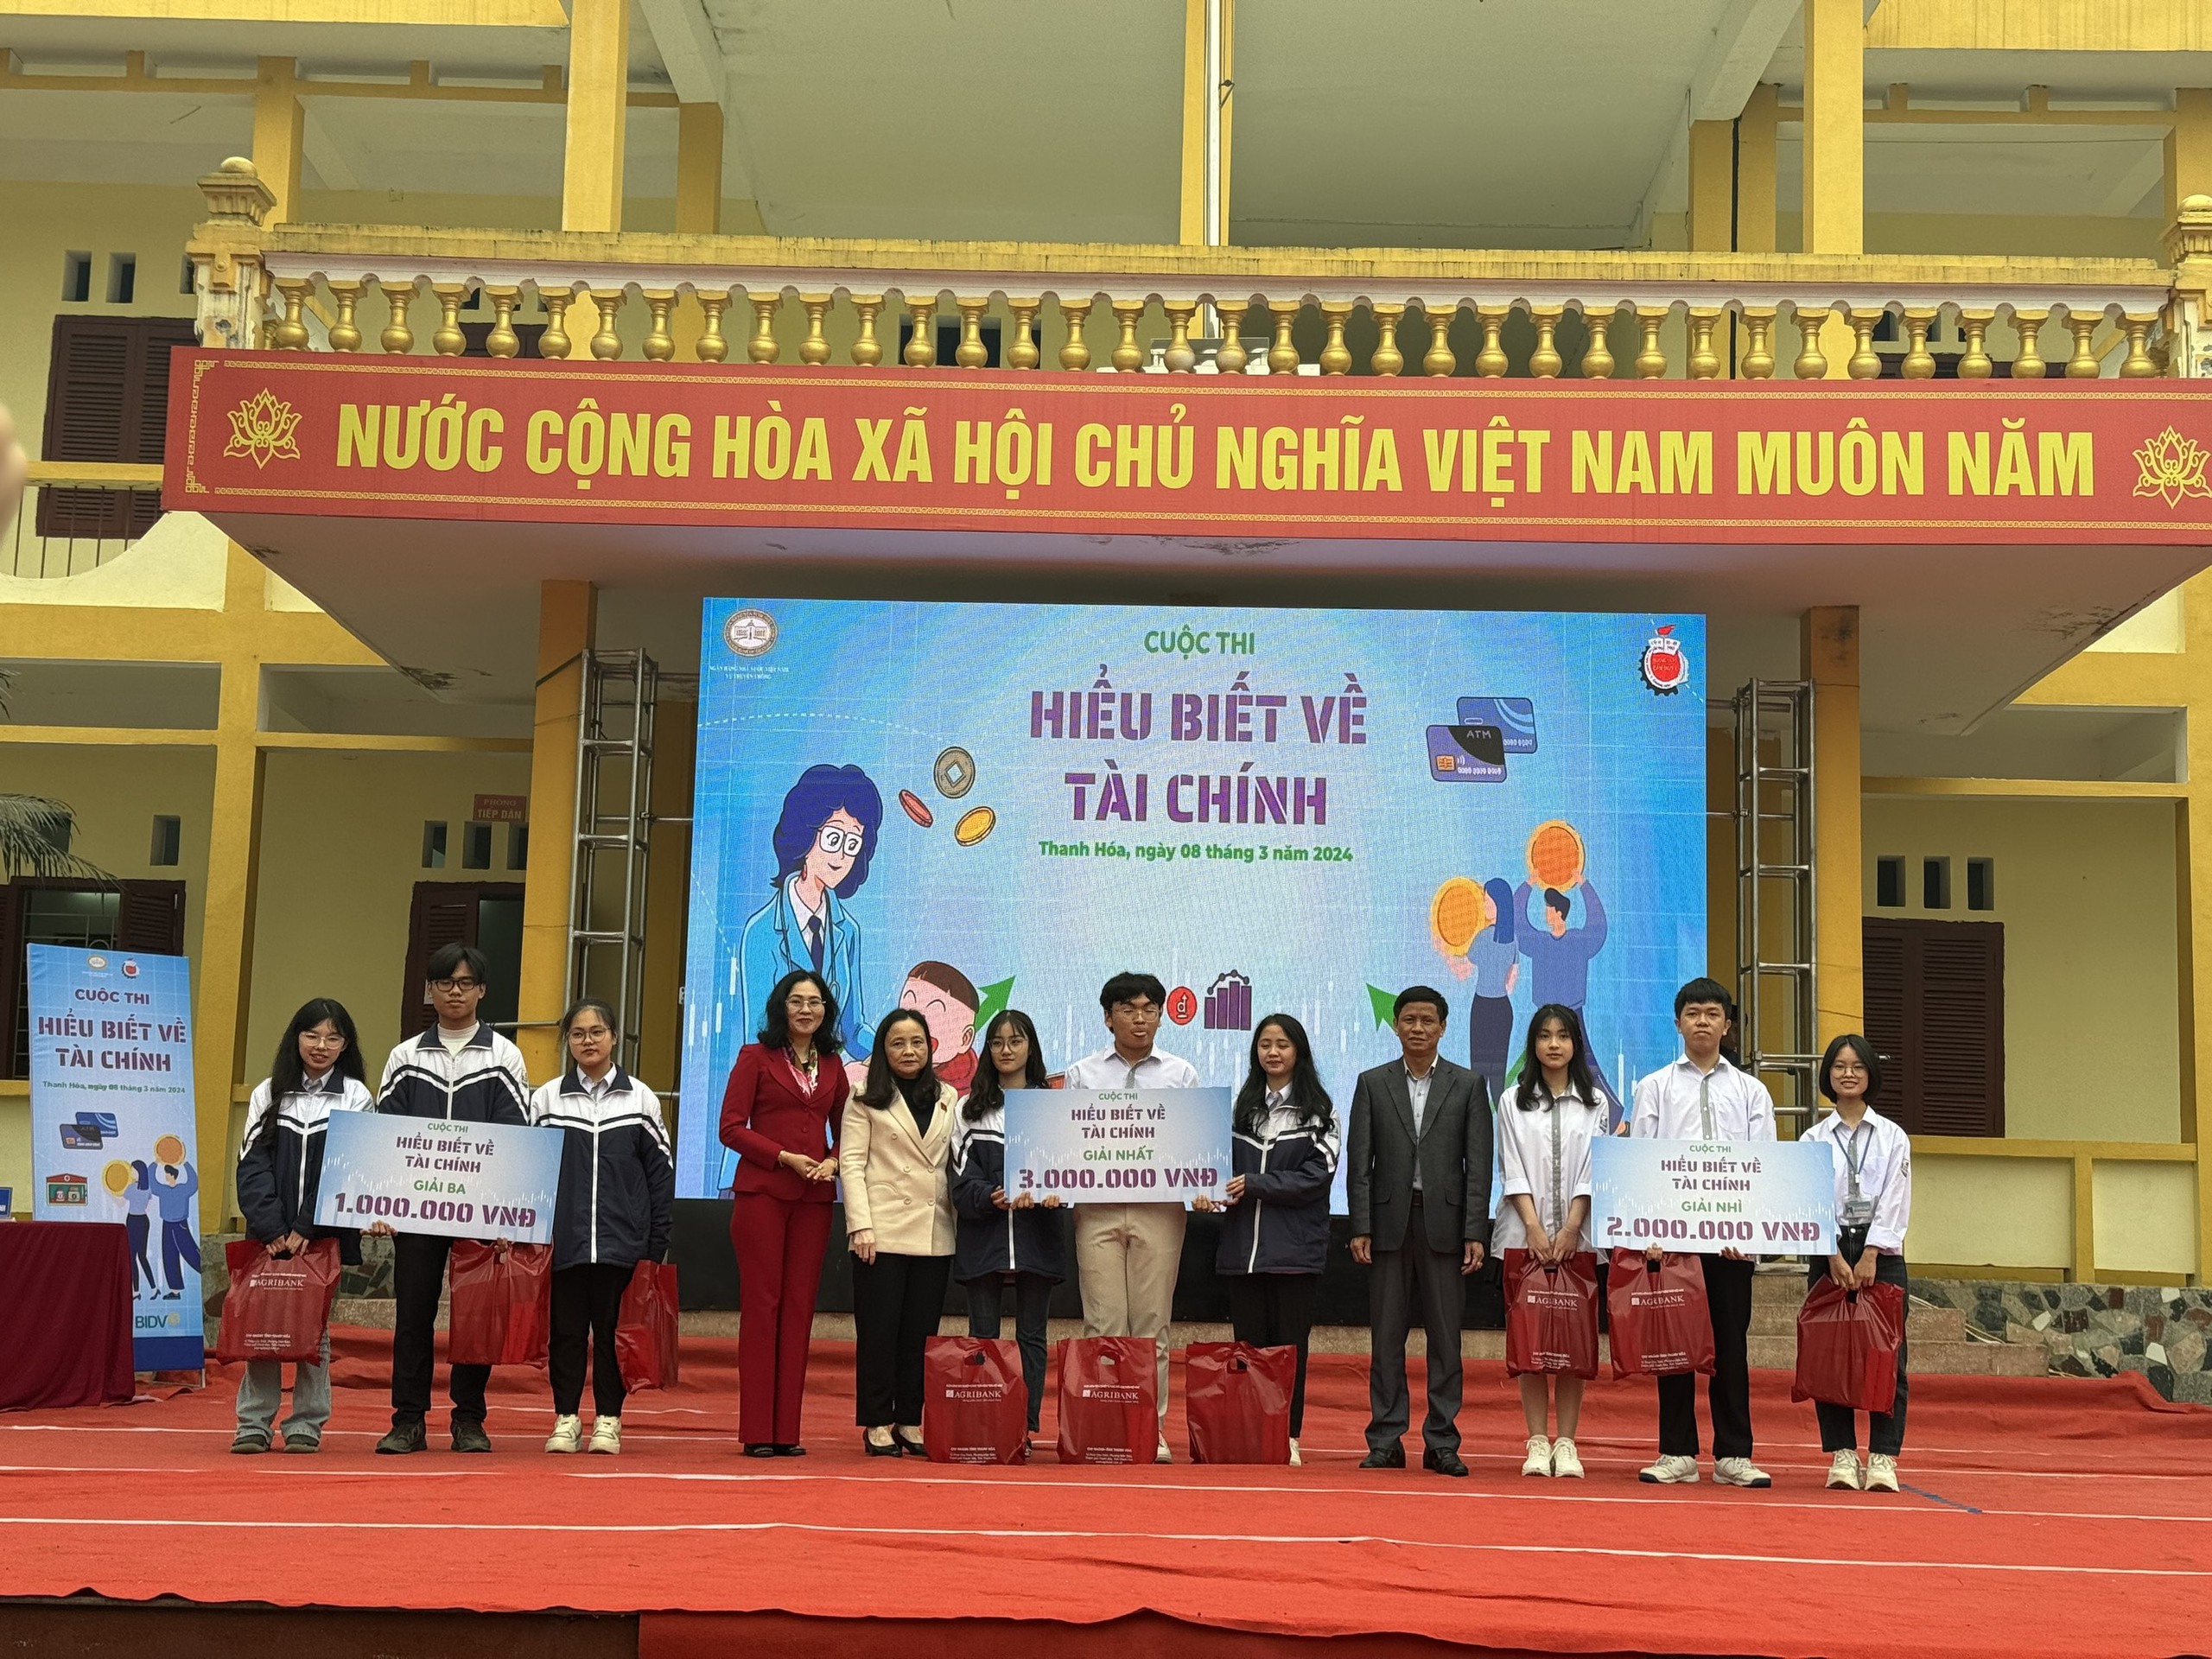 Cuộc thi Hiểu biết về tài chính được tổ chức cho gần 1800 học sinh trung học tại Thanh Hóa- Ảnh 2.